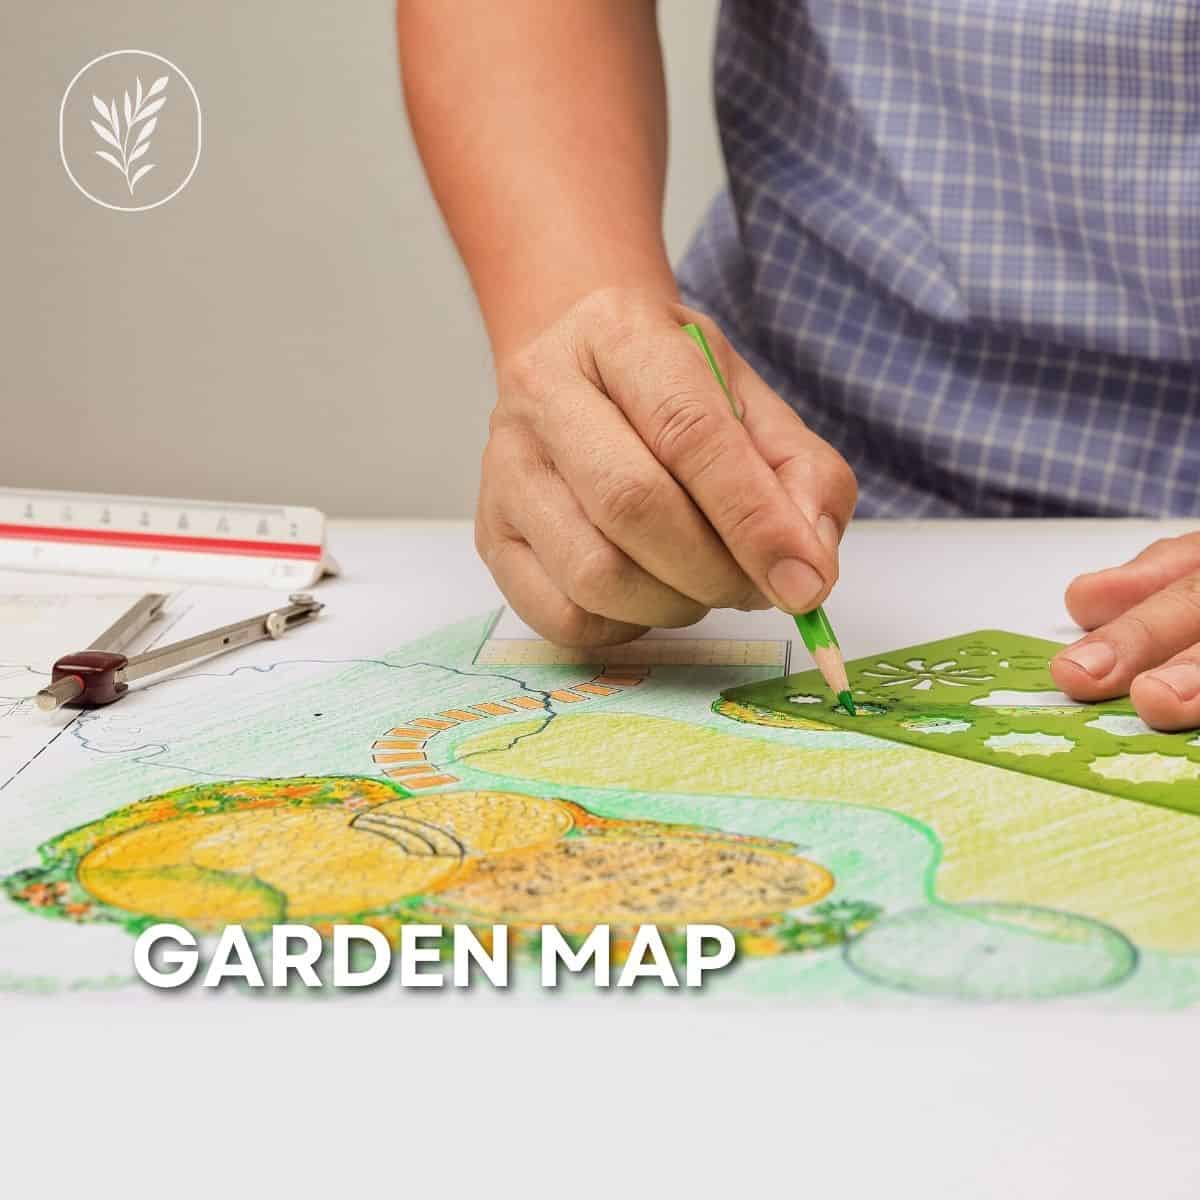 Garden map via @home4theharvest